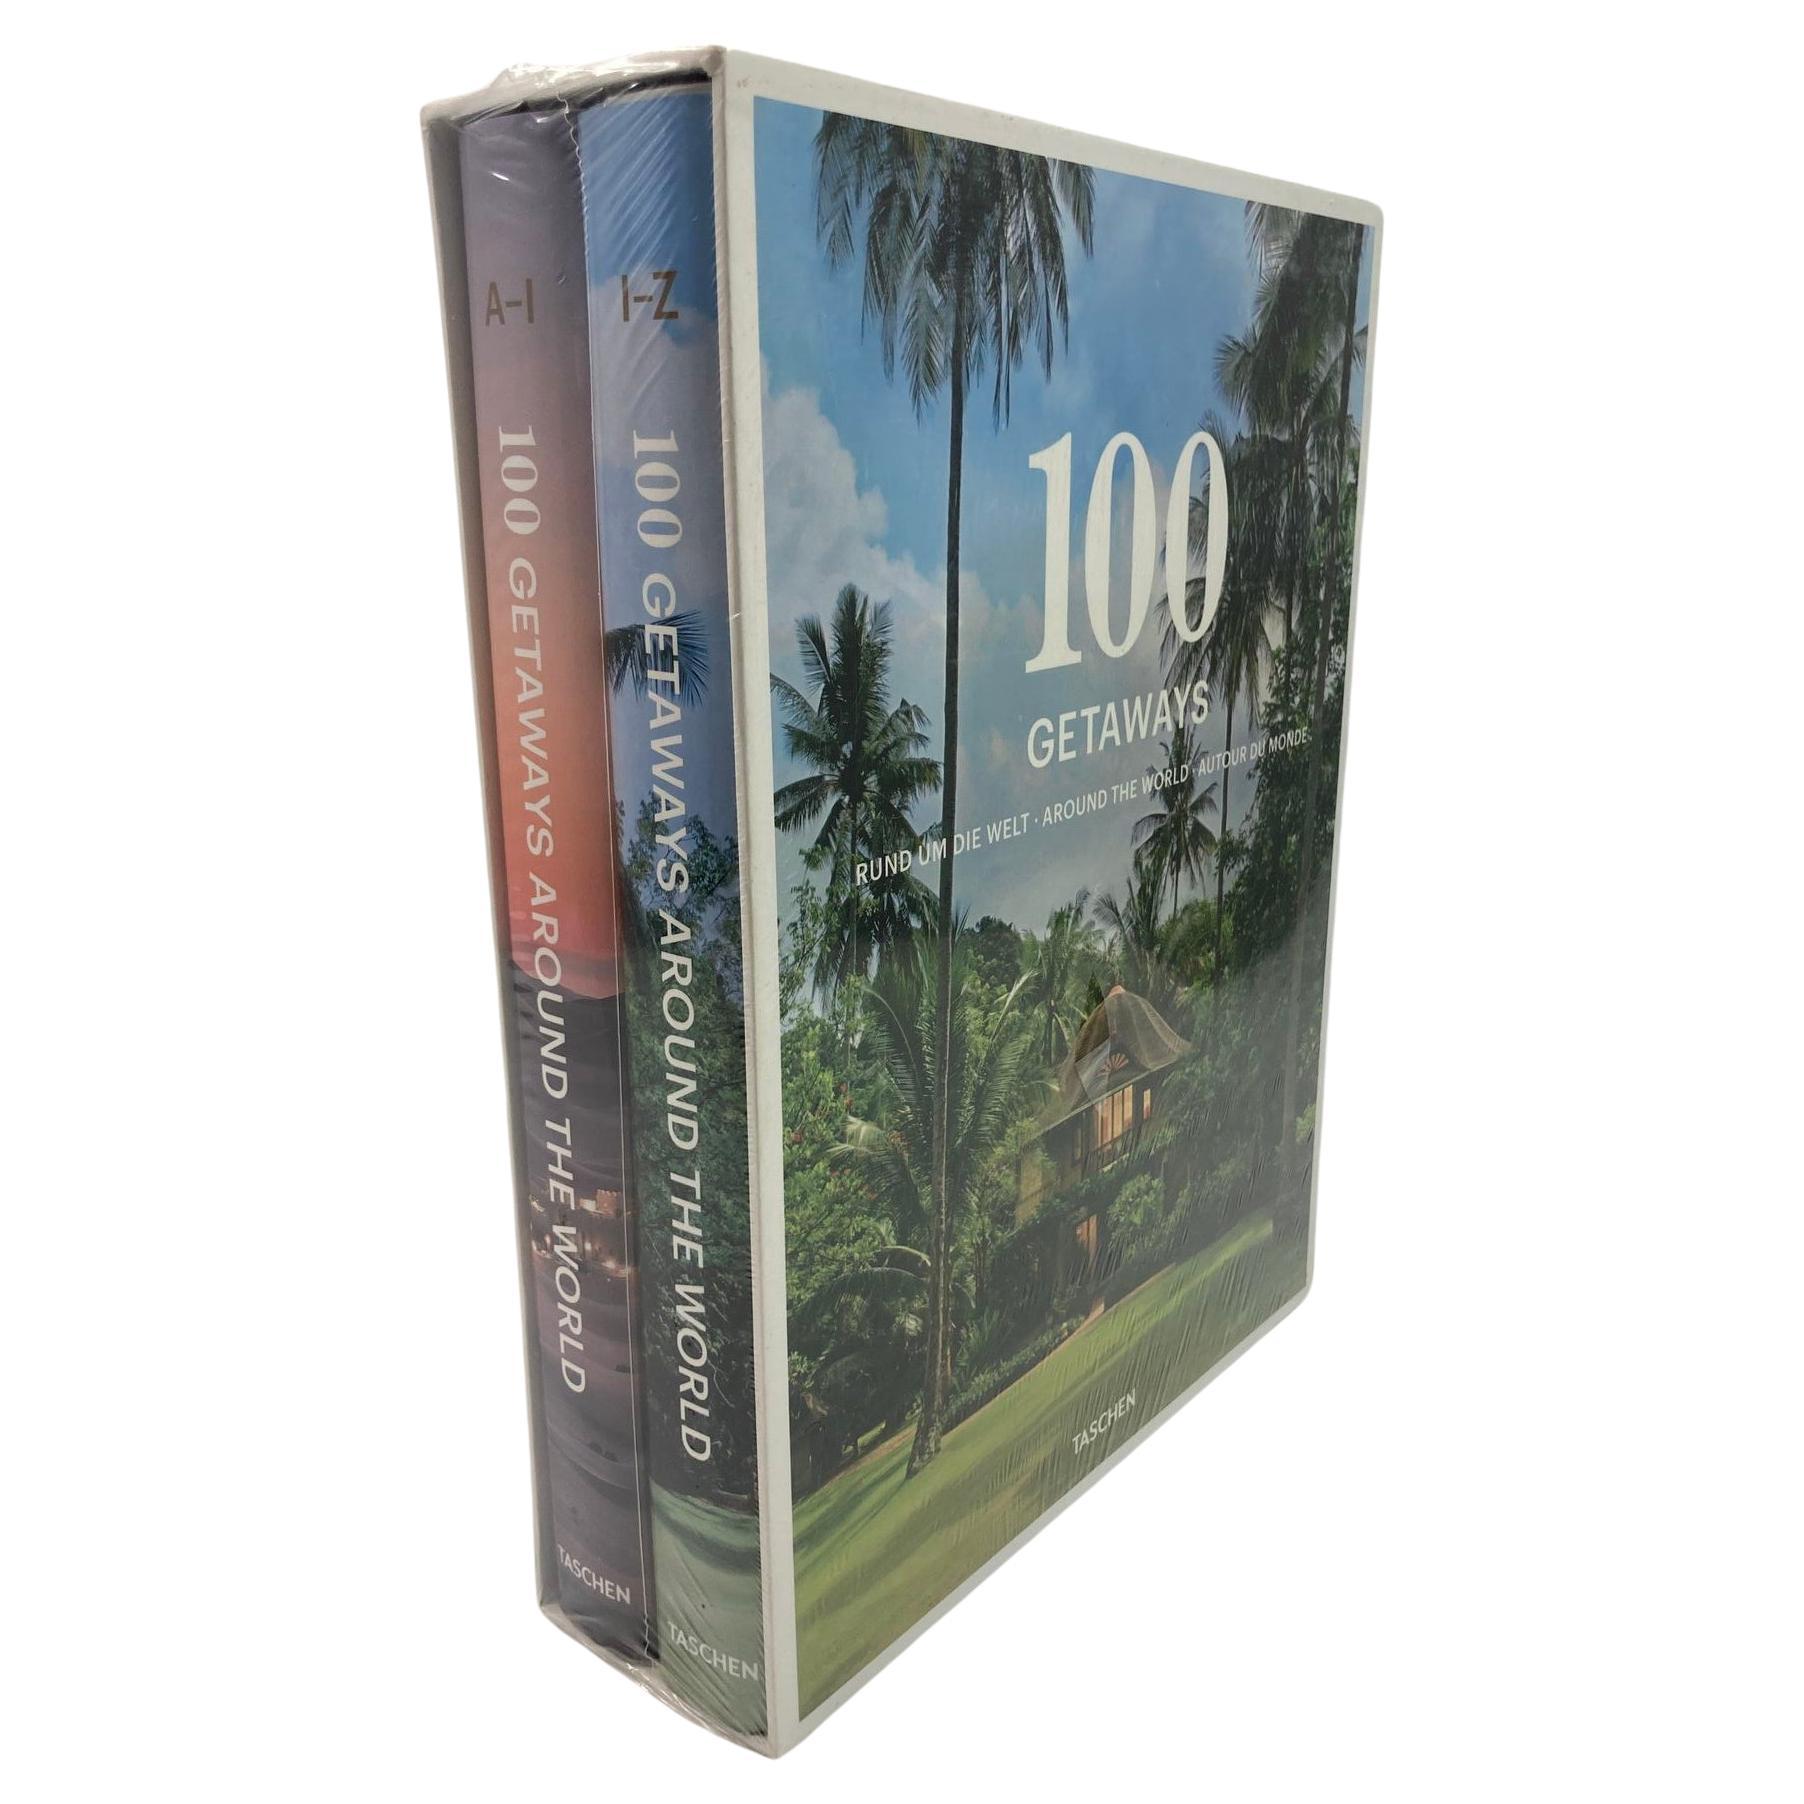 100 Getaways Around the World de Margit J. Mayer TASCHEN couverture rigide 2014